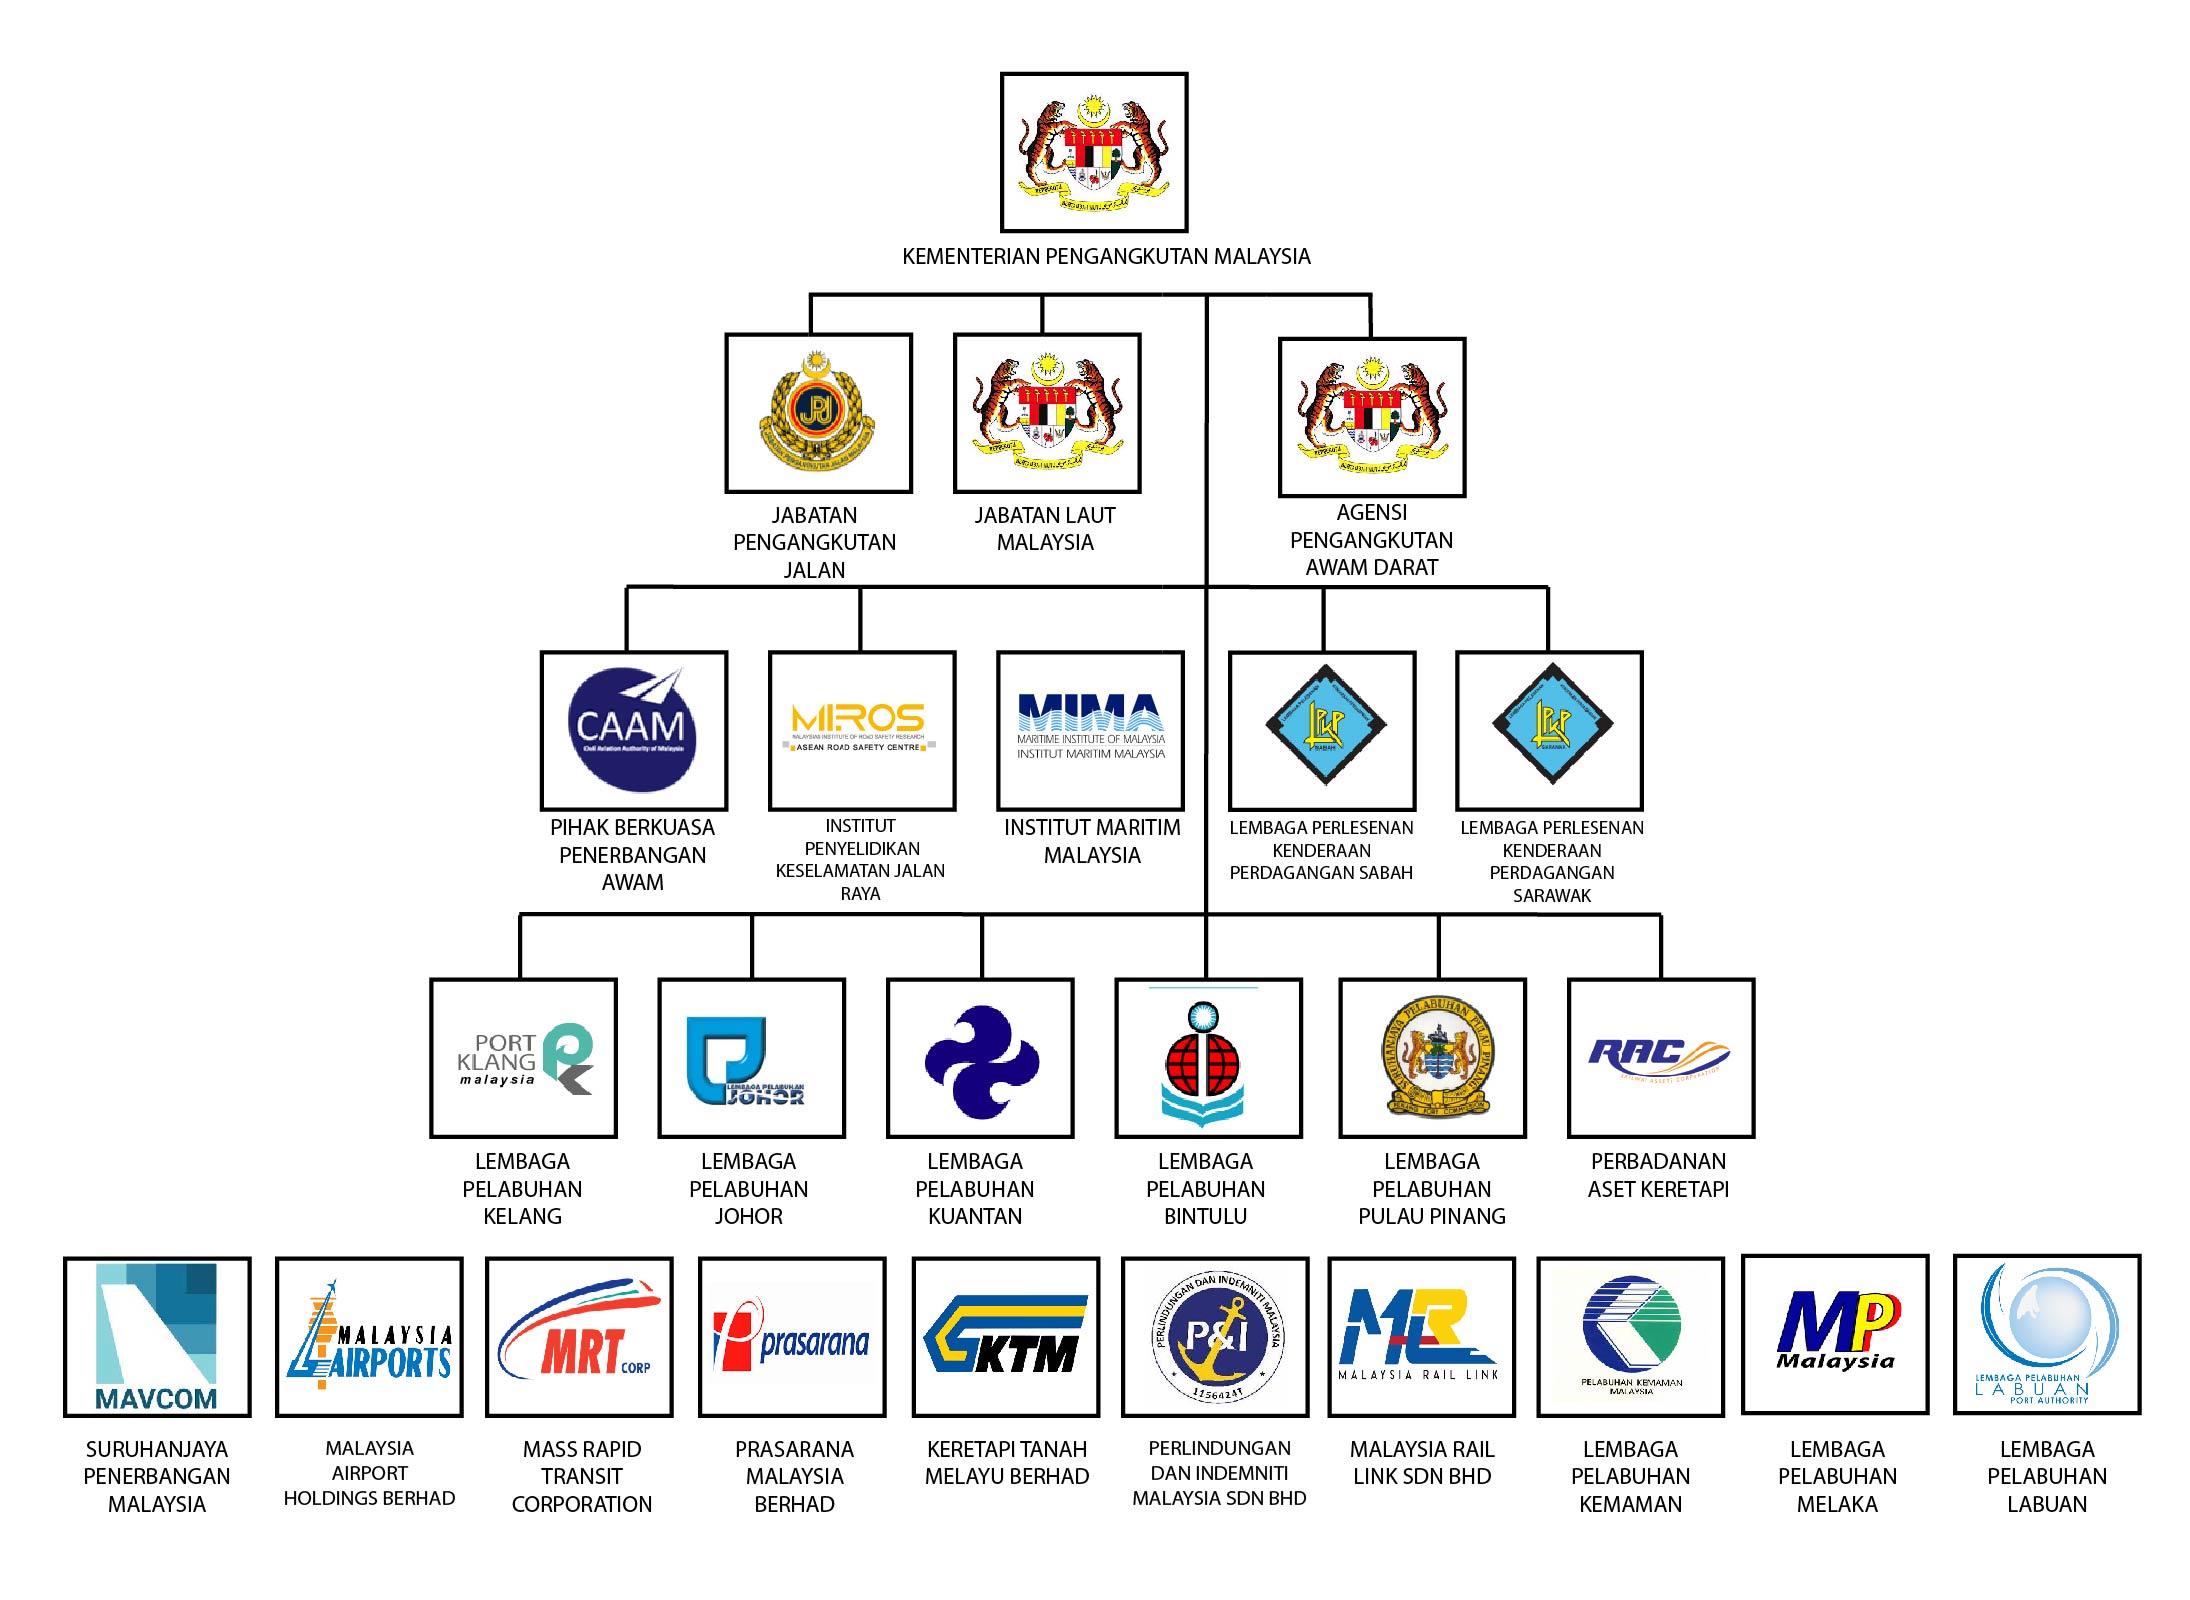 Malaysia kementerian pengangkutan Ministry of